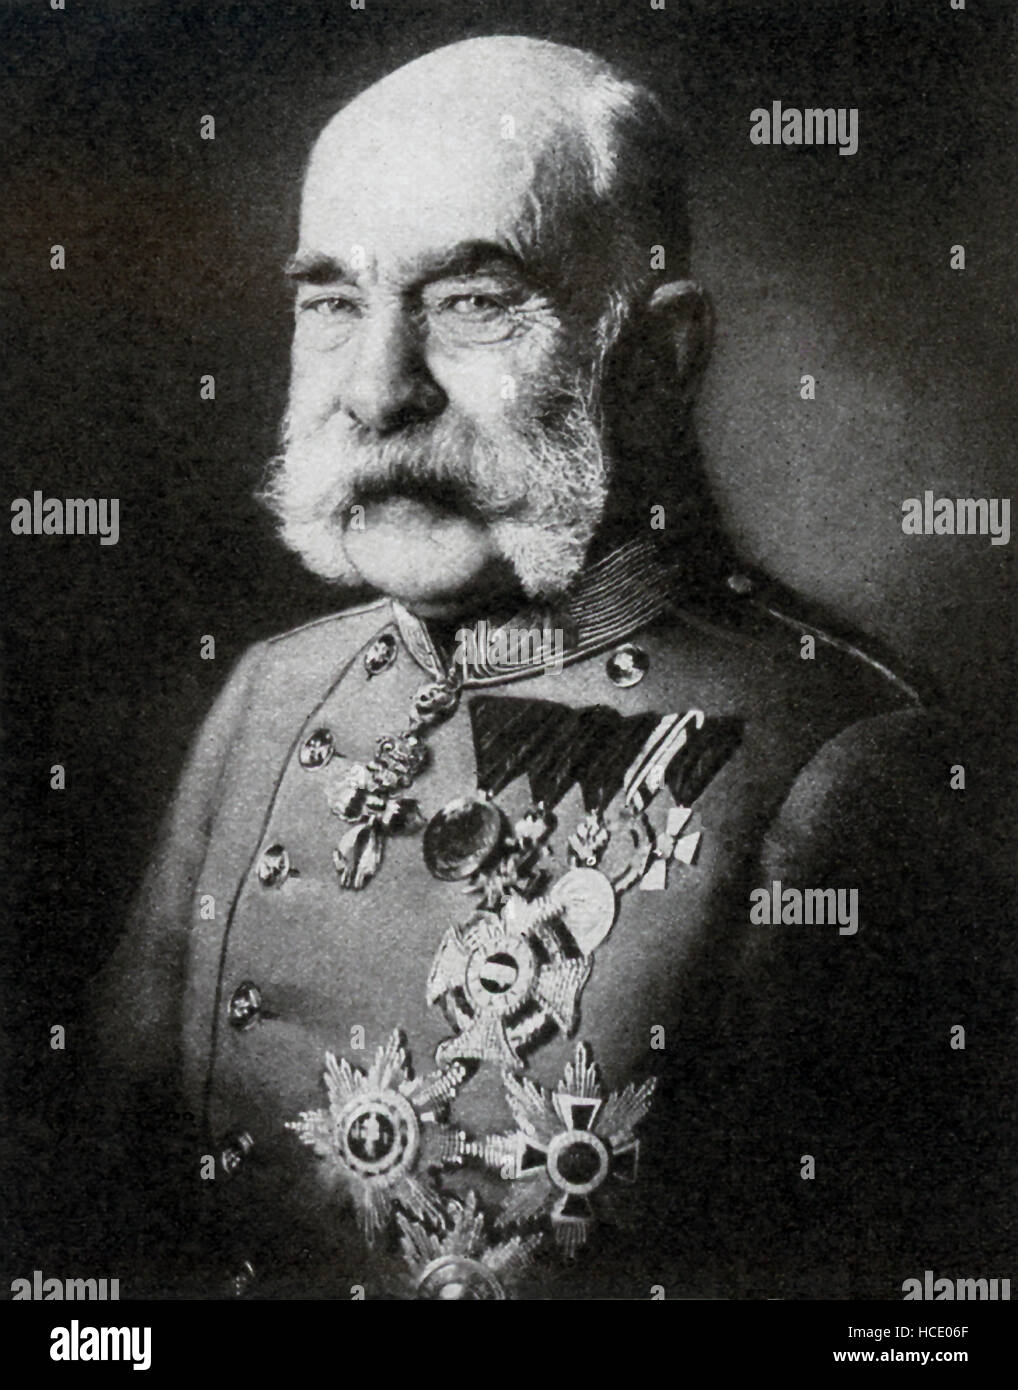 Dieses Foto des österreichisch-ungarischen Monarchen Franz Josef datiert 1917. Franz Josef war ich der Kaiser von Österreich von 1848-1916. Er war auch König von Ungarn von 1867-1916. Sein Bruder war Maximilian von Mexiko. Stockfoto